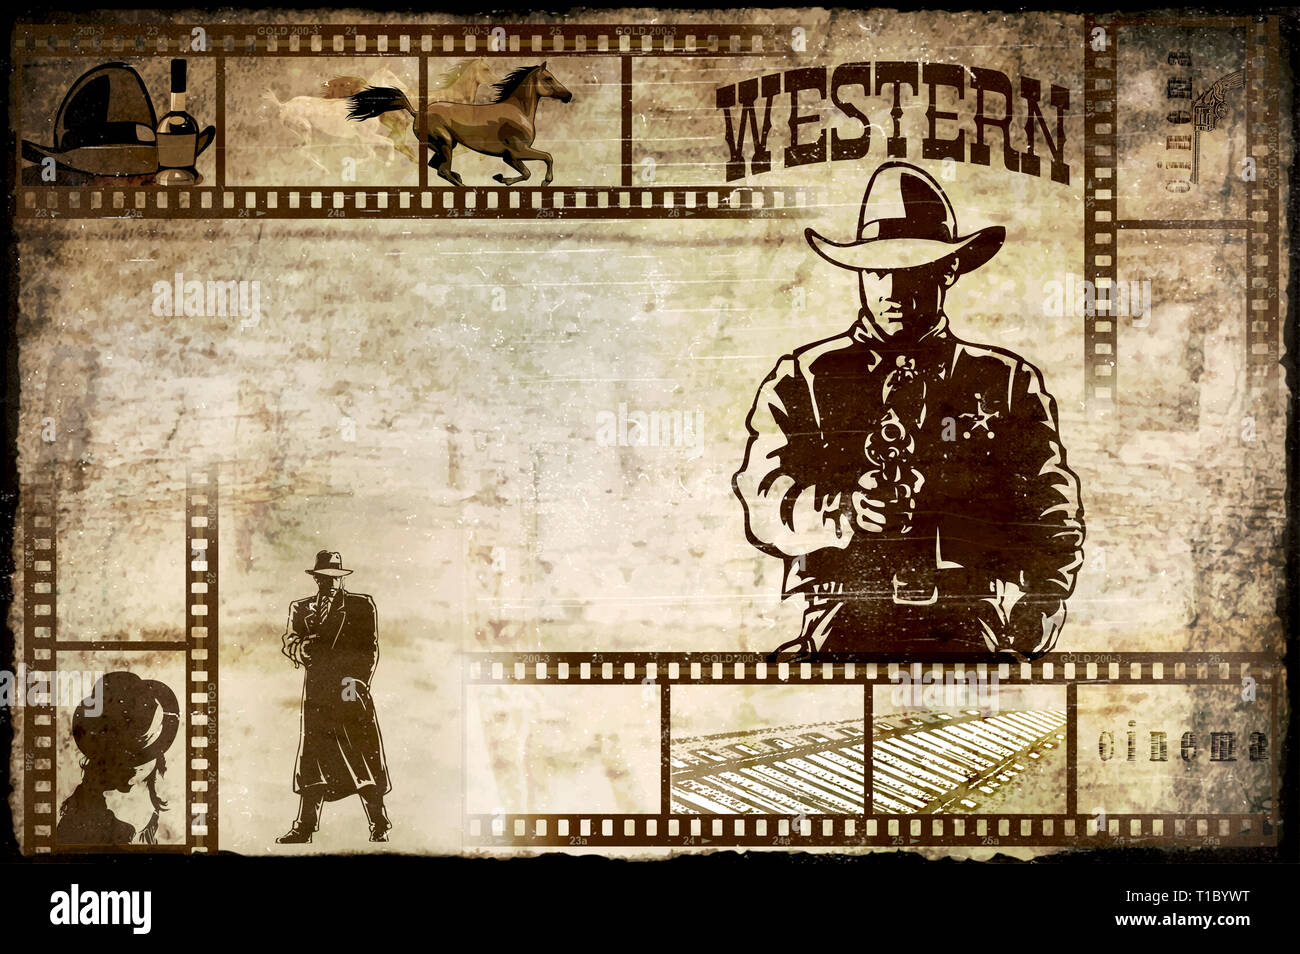 Illustrations de fond poster avec détails et personnages symboliques de l'Ouest sauvage. Sheriff silhouette, vieille bande de film et les attributs de l'ouest Banque D'Images